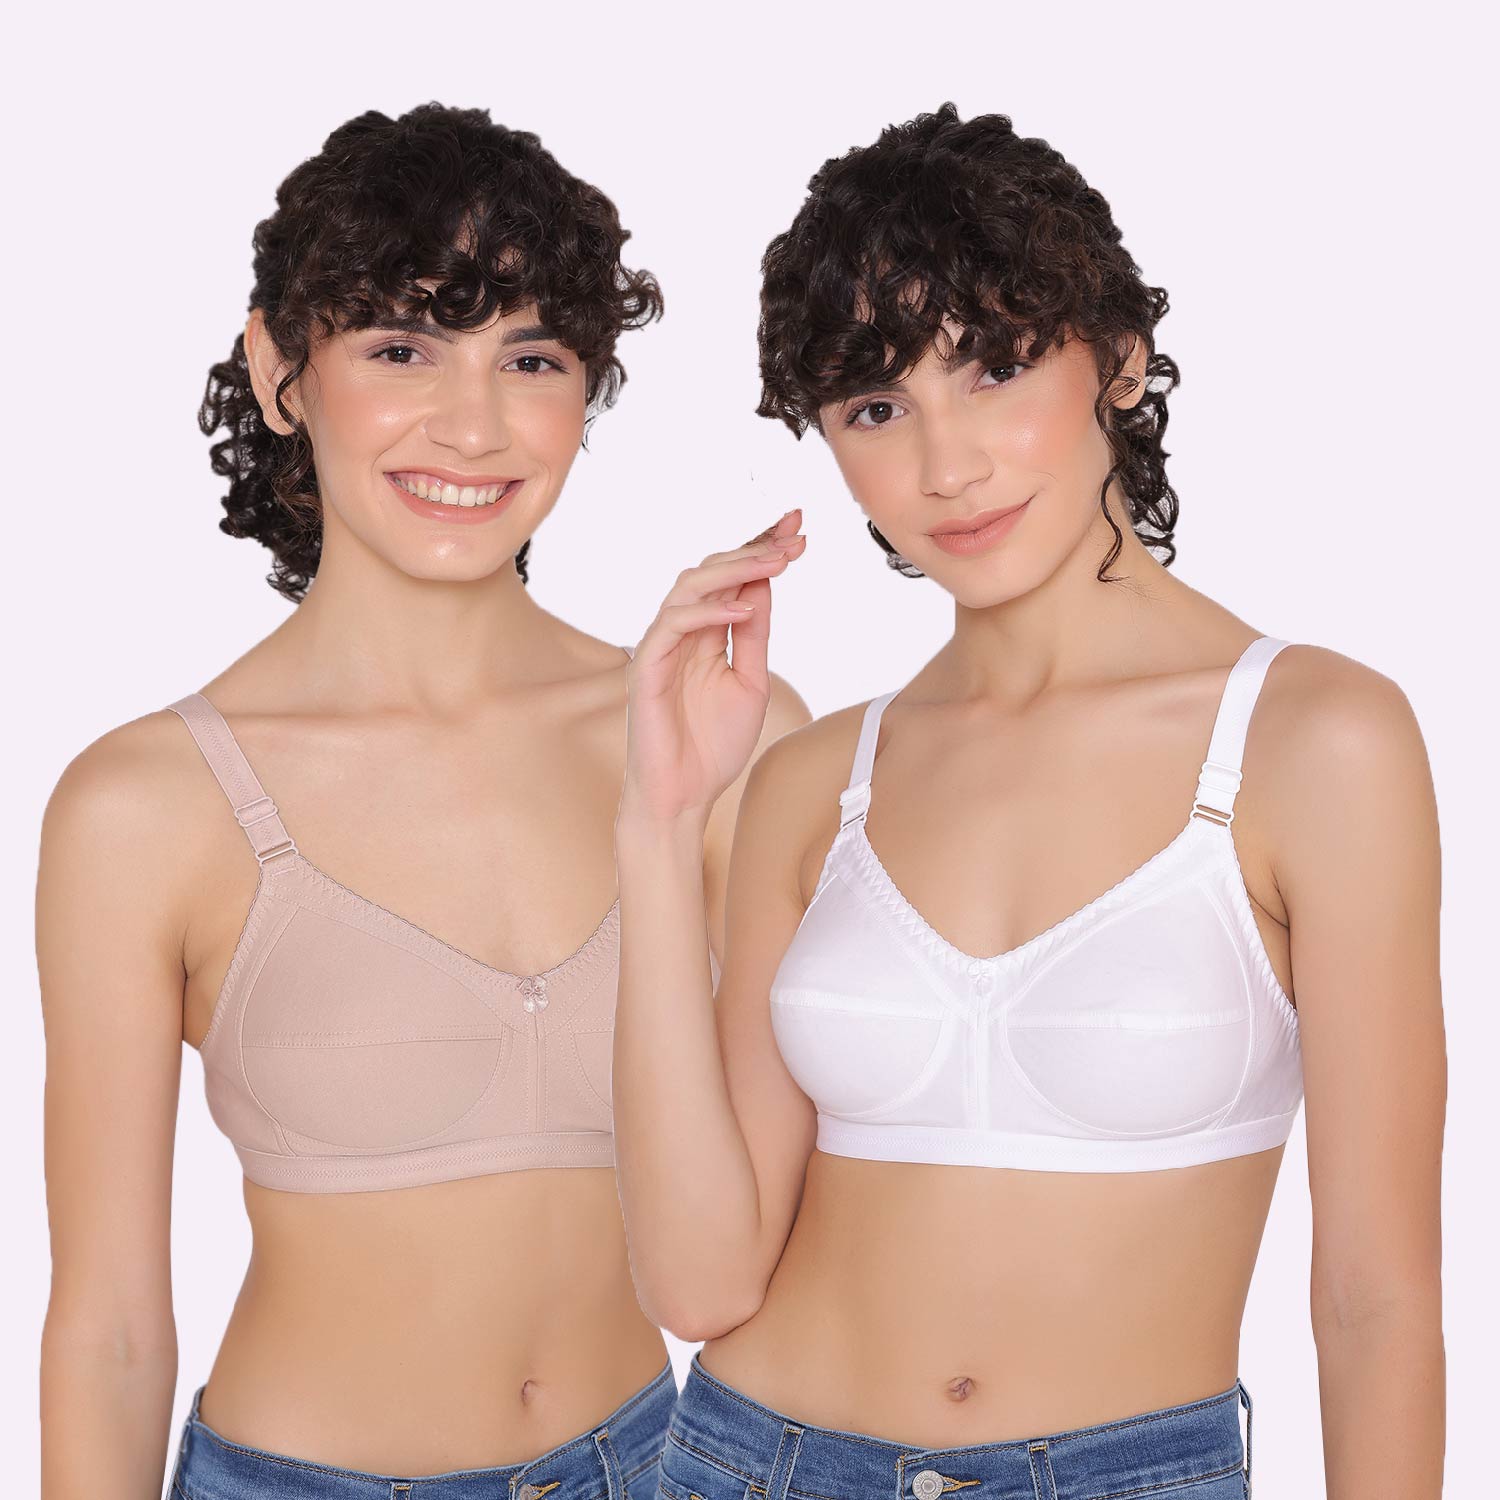 Buy Ultrafit Cotton Full Coverage Bra for Women / Girls